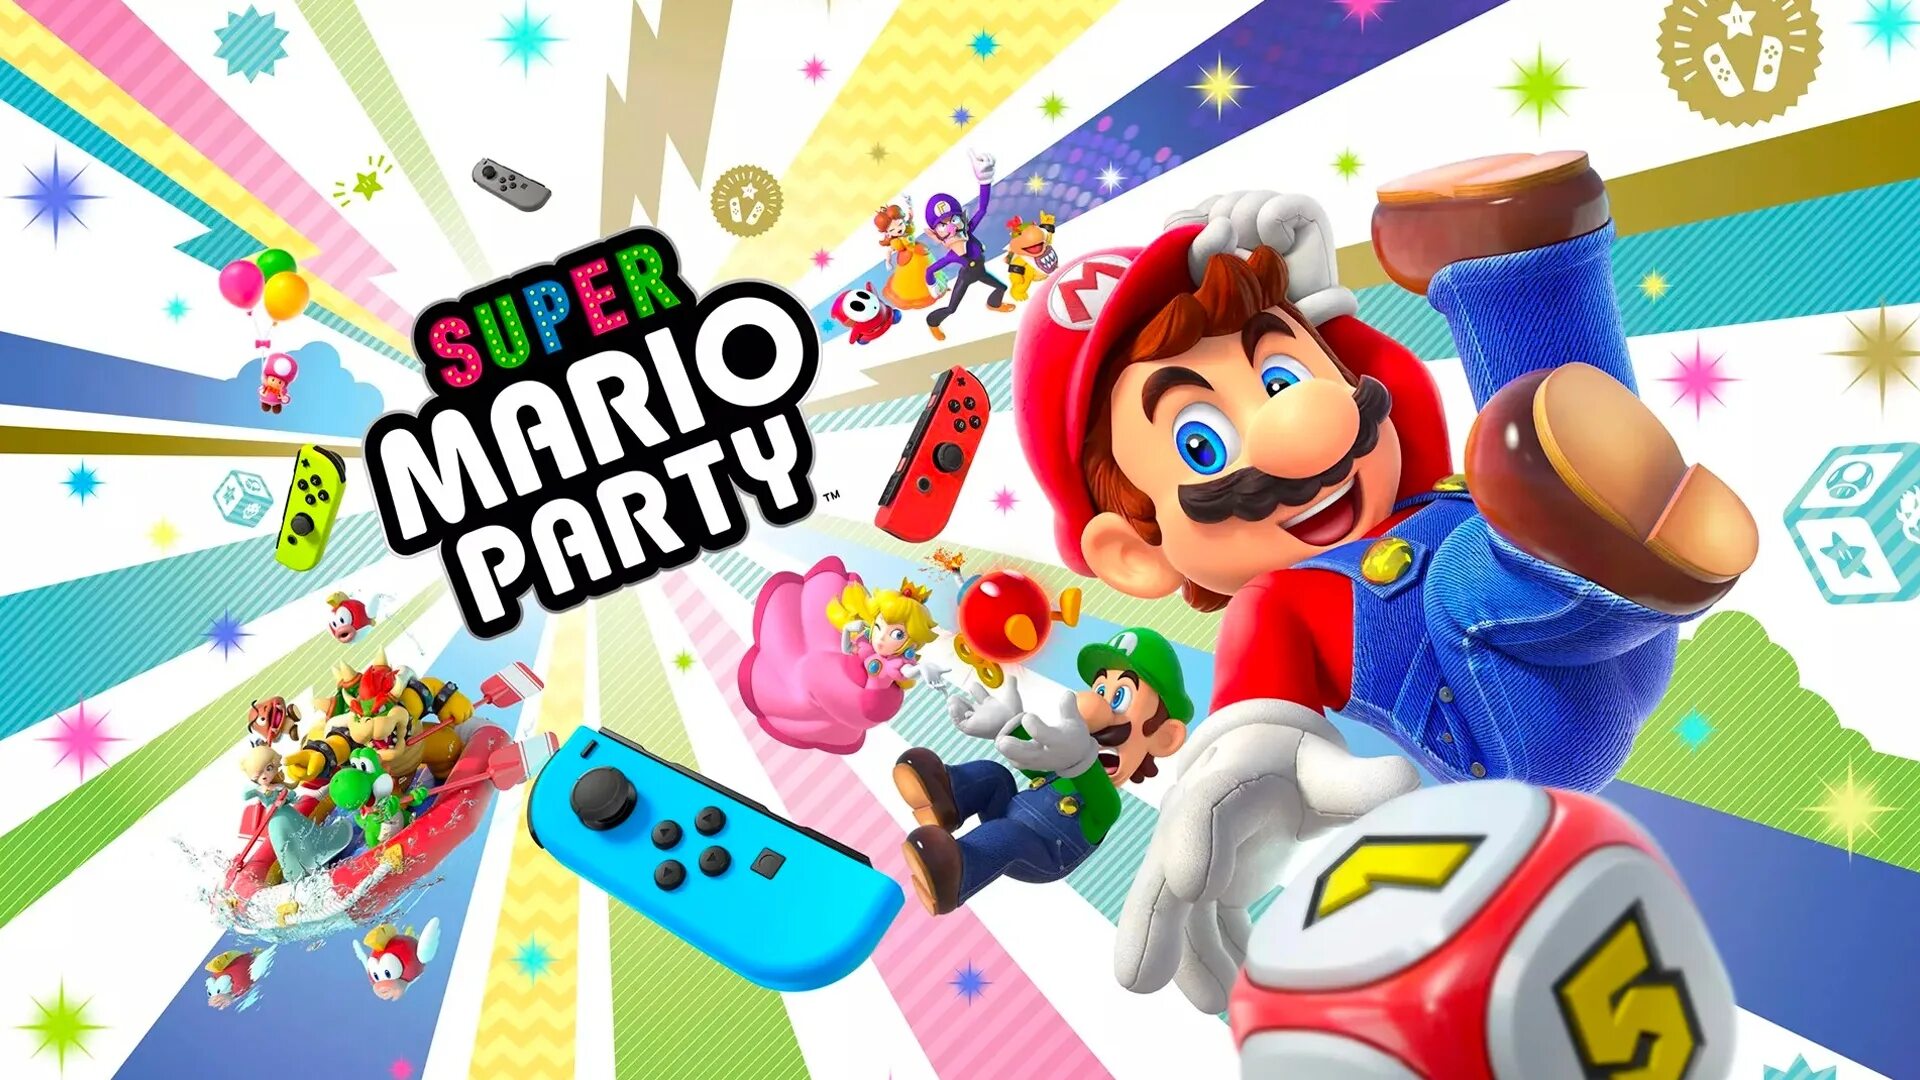 Nintendo Switch Марио пати. Mario Party 10 Nintendo Switch. Супер Марио пати на Нинтендо свитч. Nintendo Switch Nintendo Mario Party Superstars. Mario bros nintendo switch